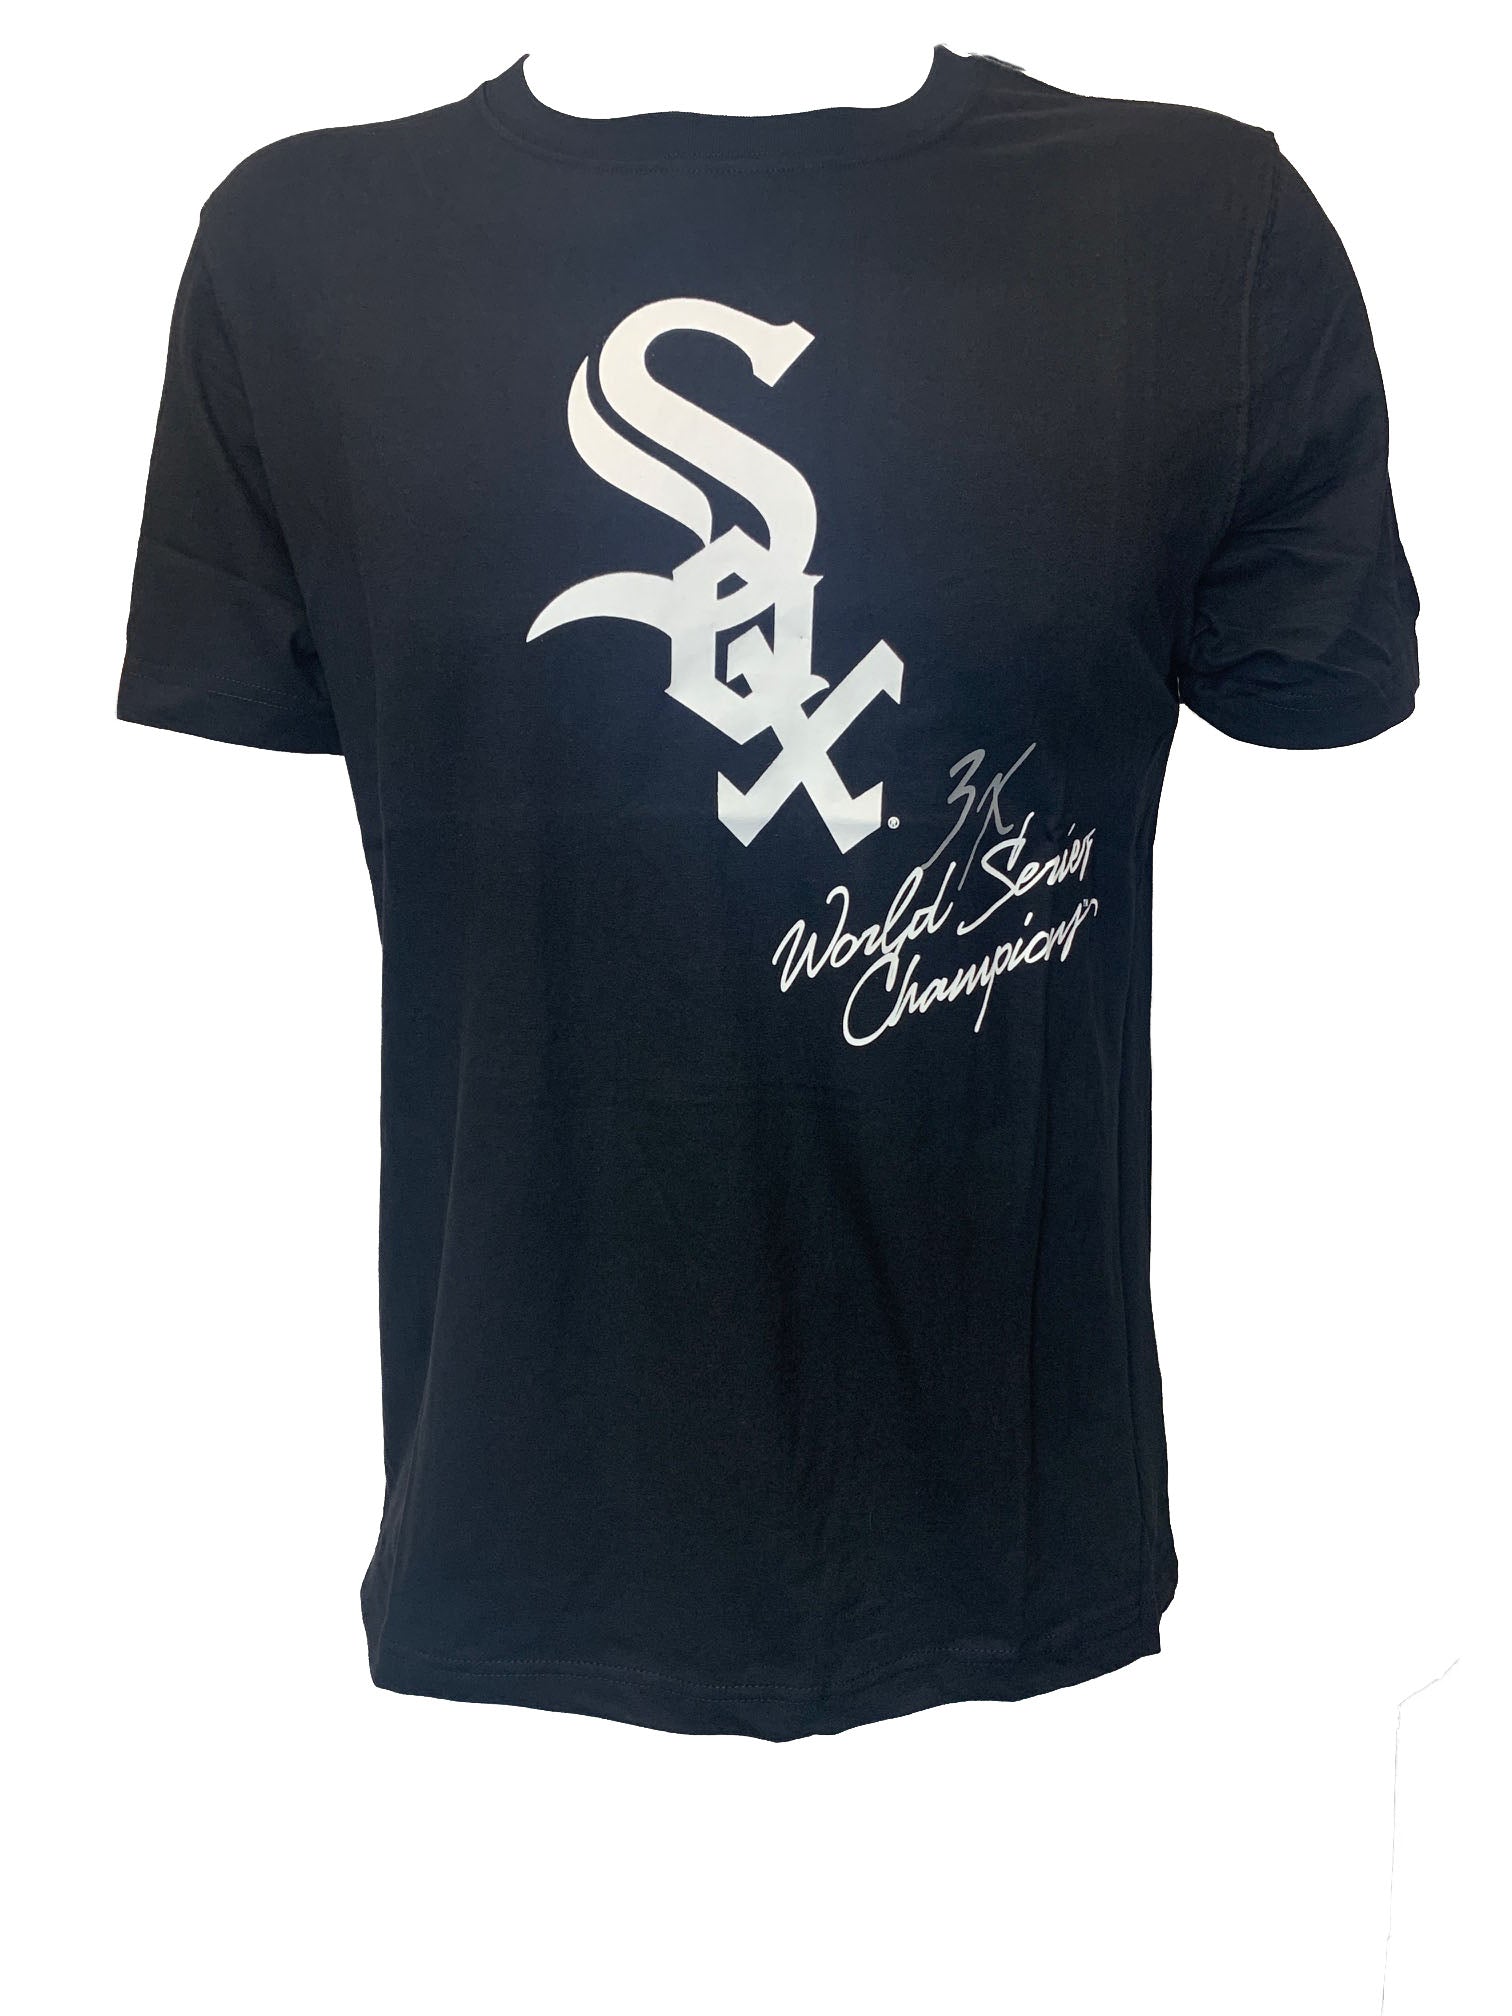 New Era Chicago White Sox T-Shirt